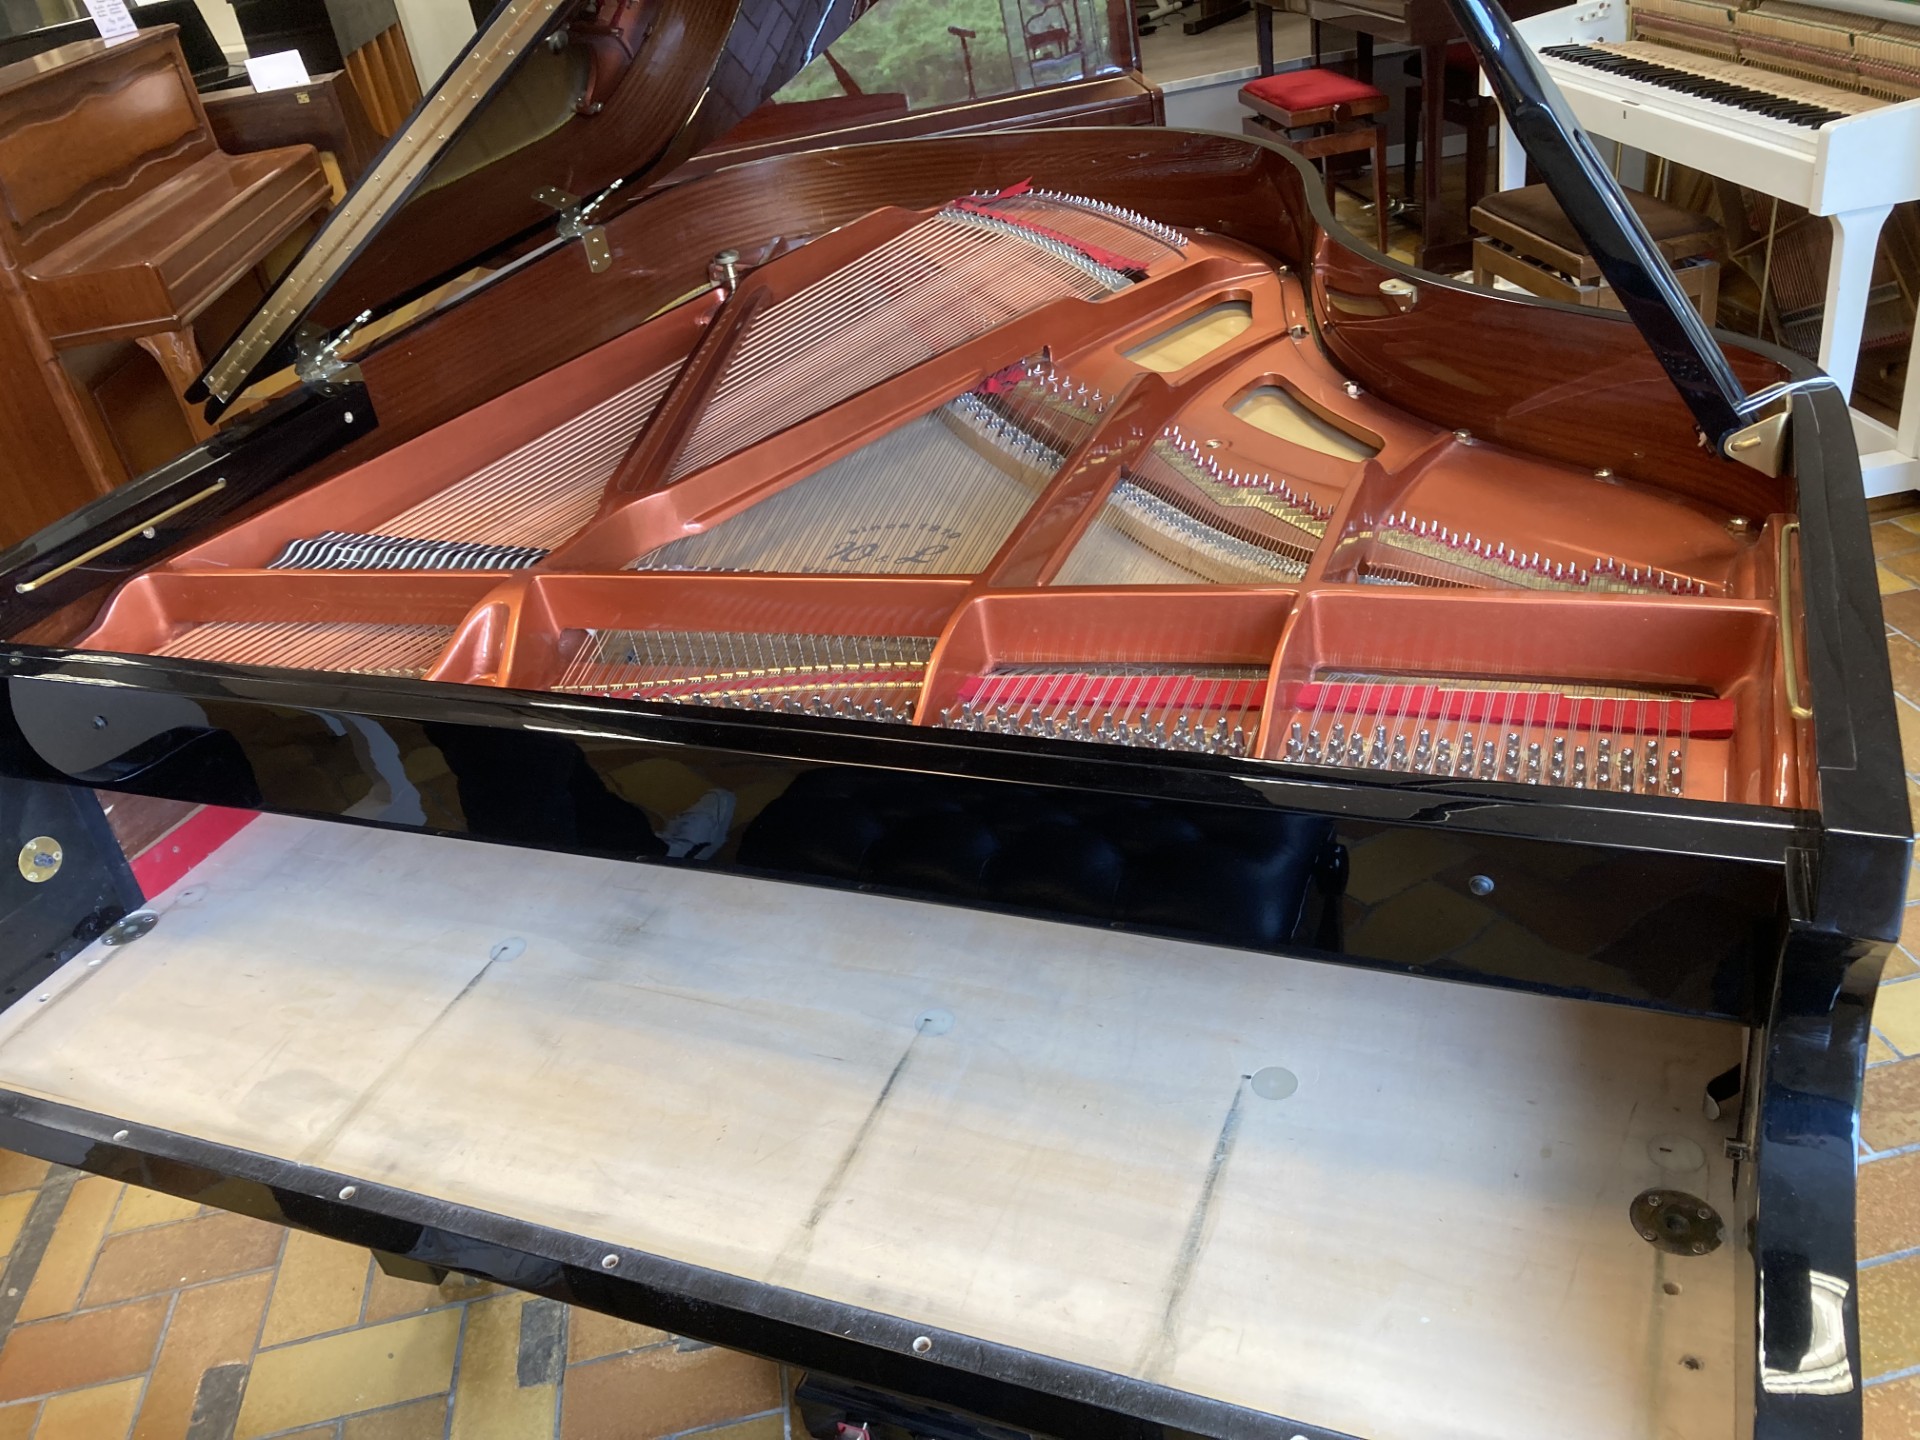 Accordeur de piano professionnel à Lyon en train d'accorder un piano à queue